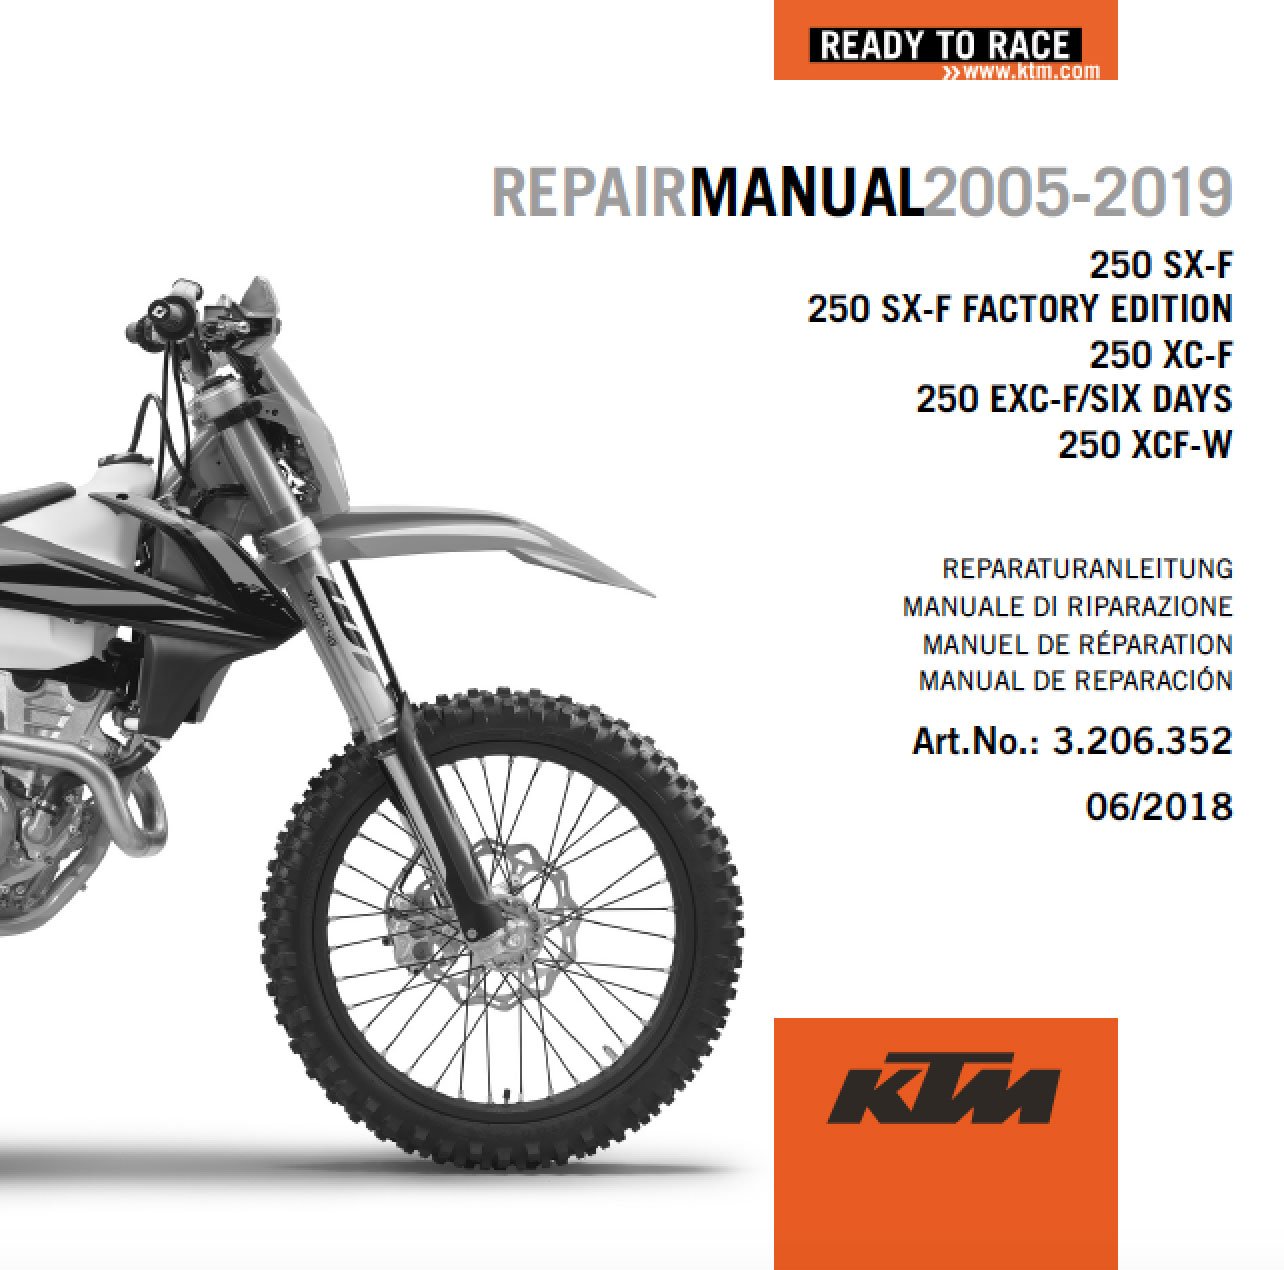 Main image of KTM DVD Repair Manual 250 F 2005-2019